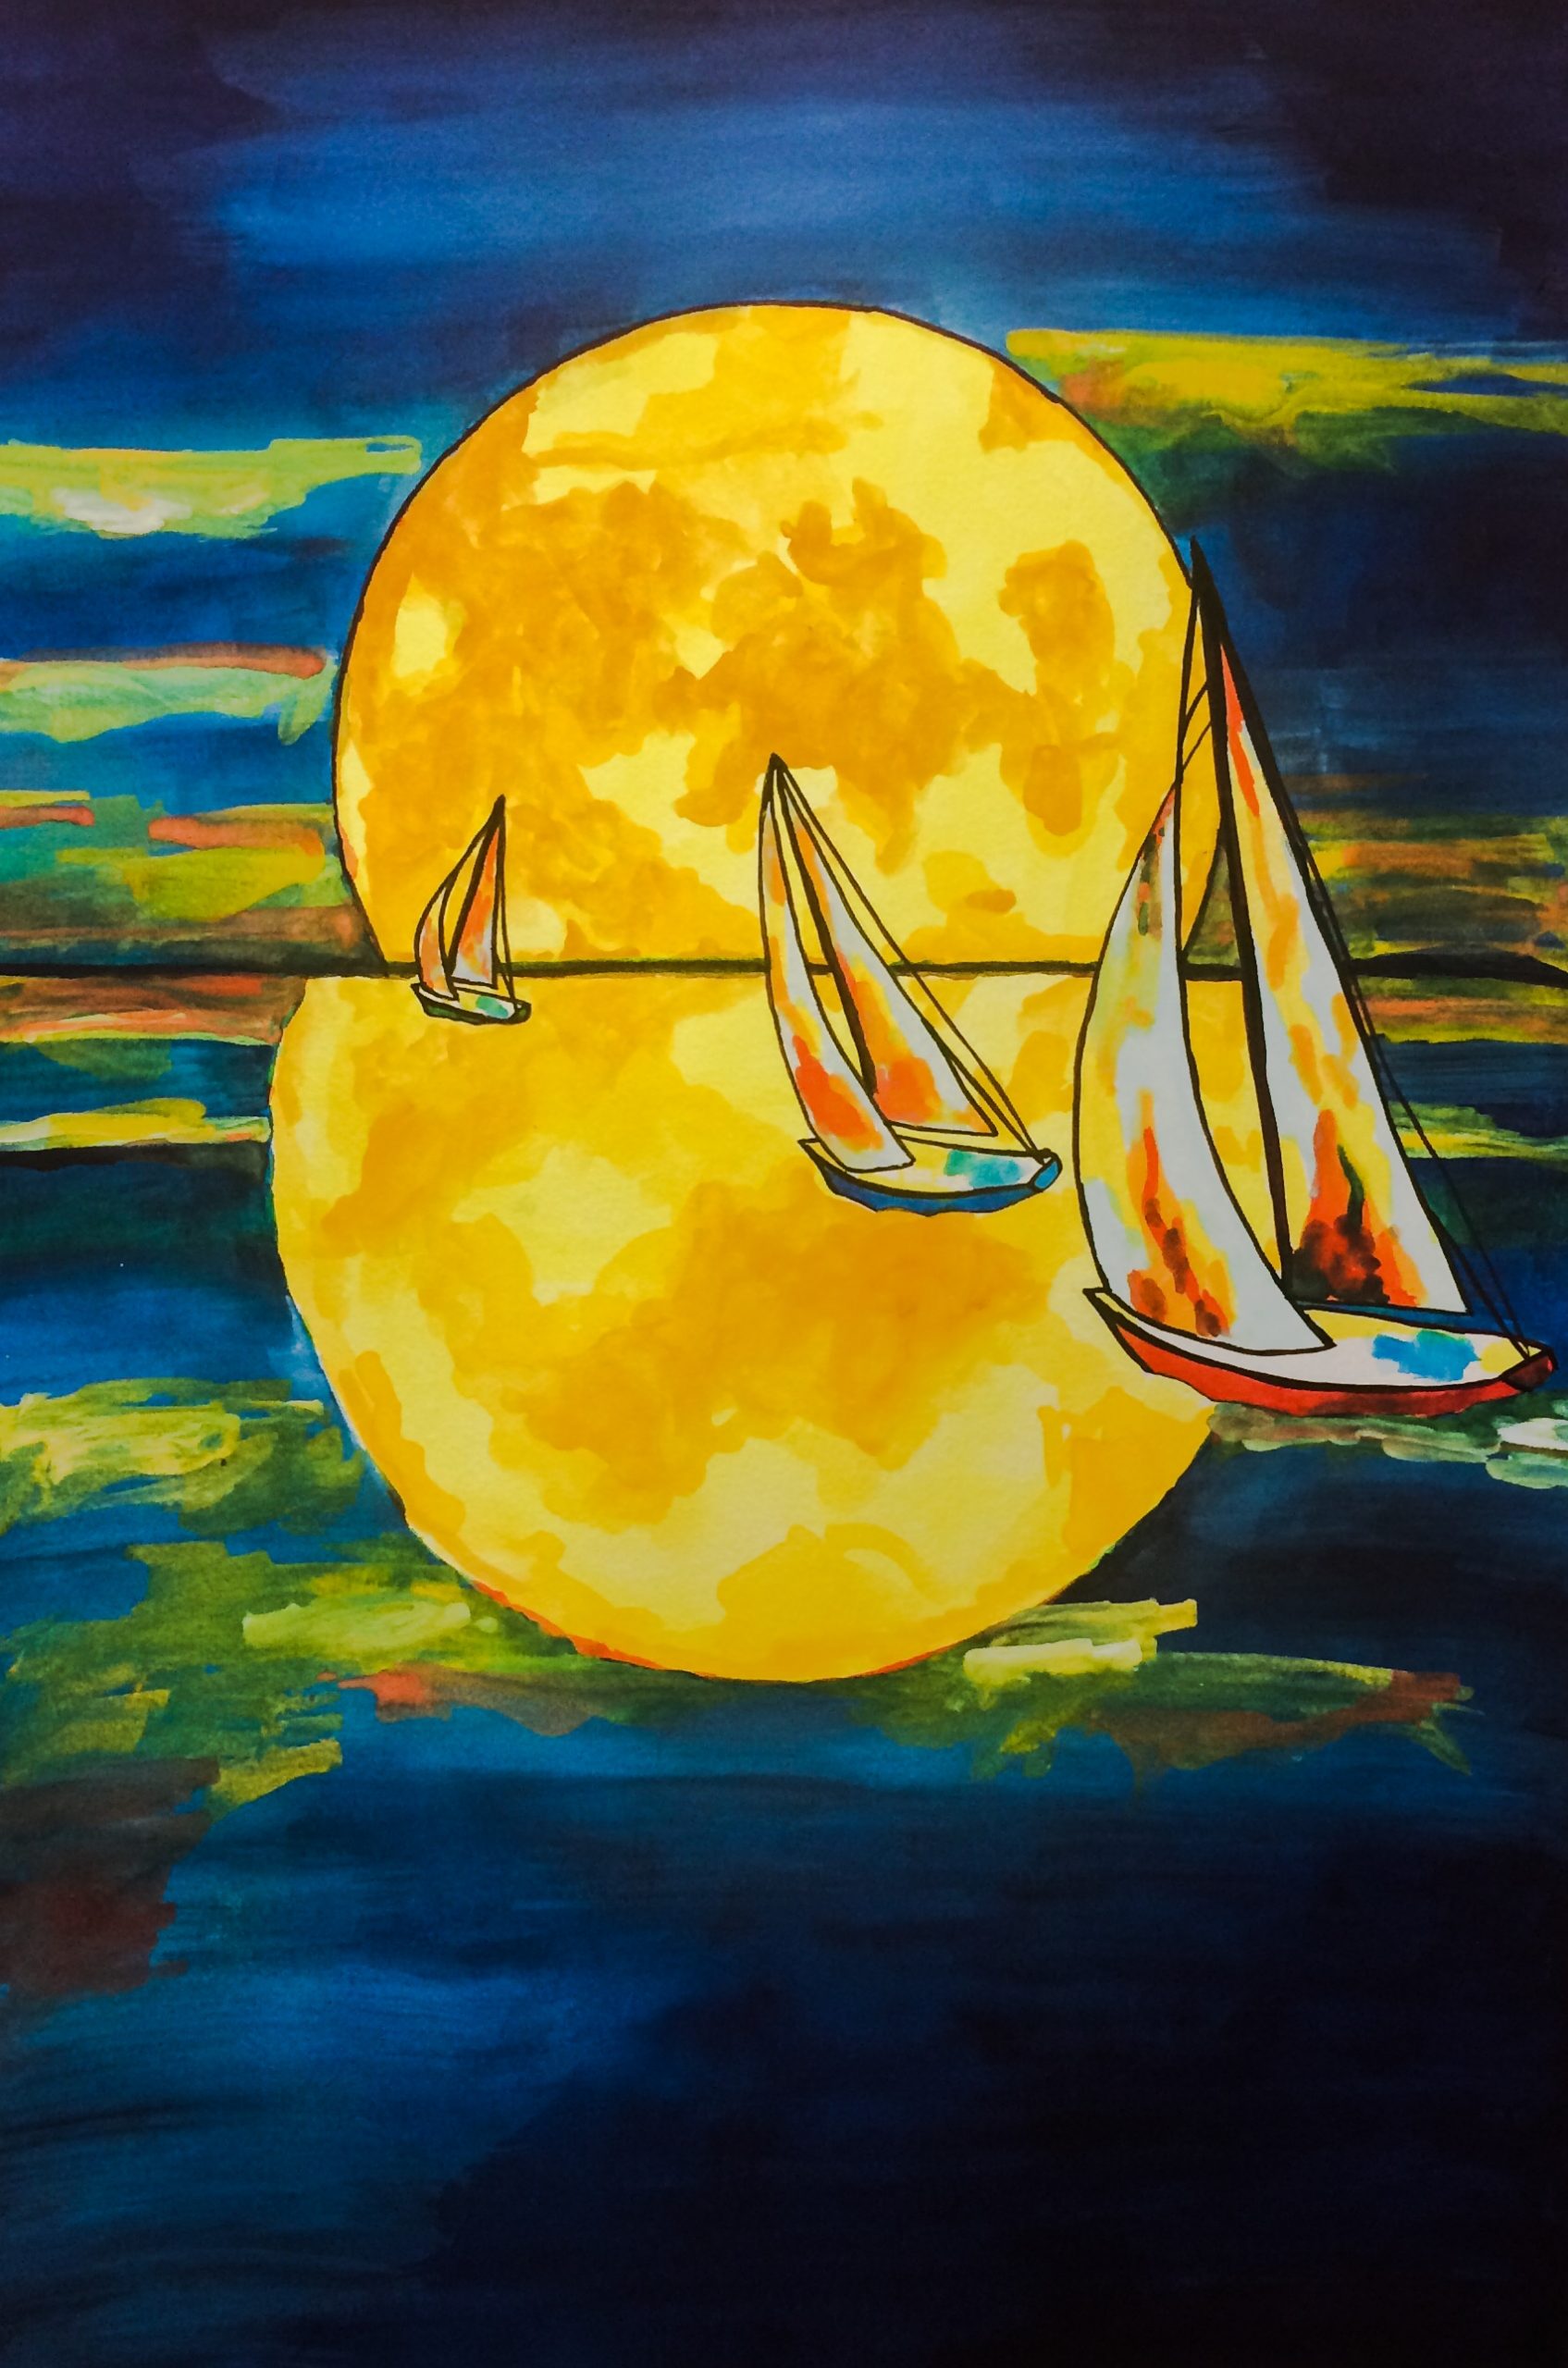 Sailboats sailing under the moonlight